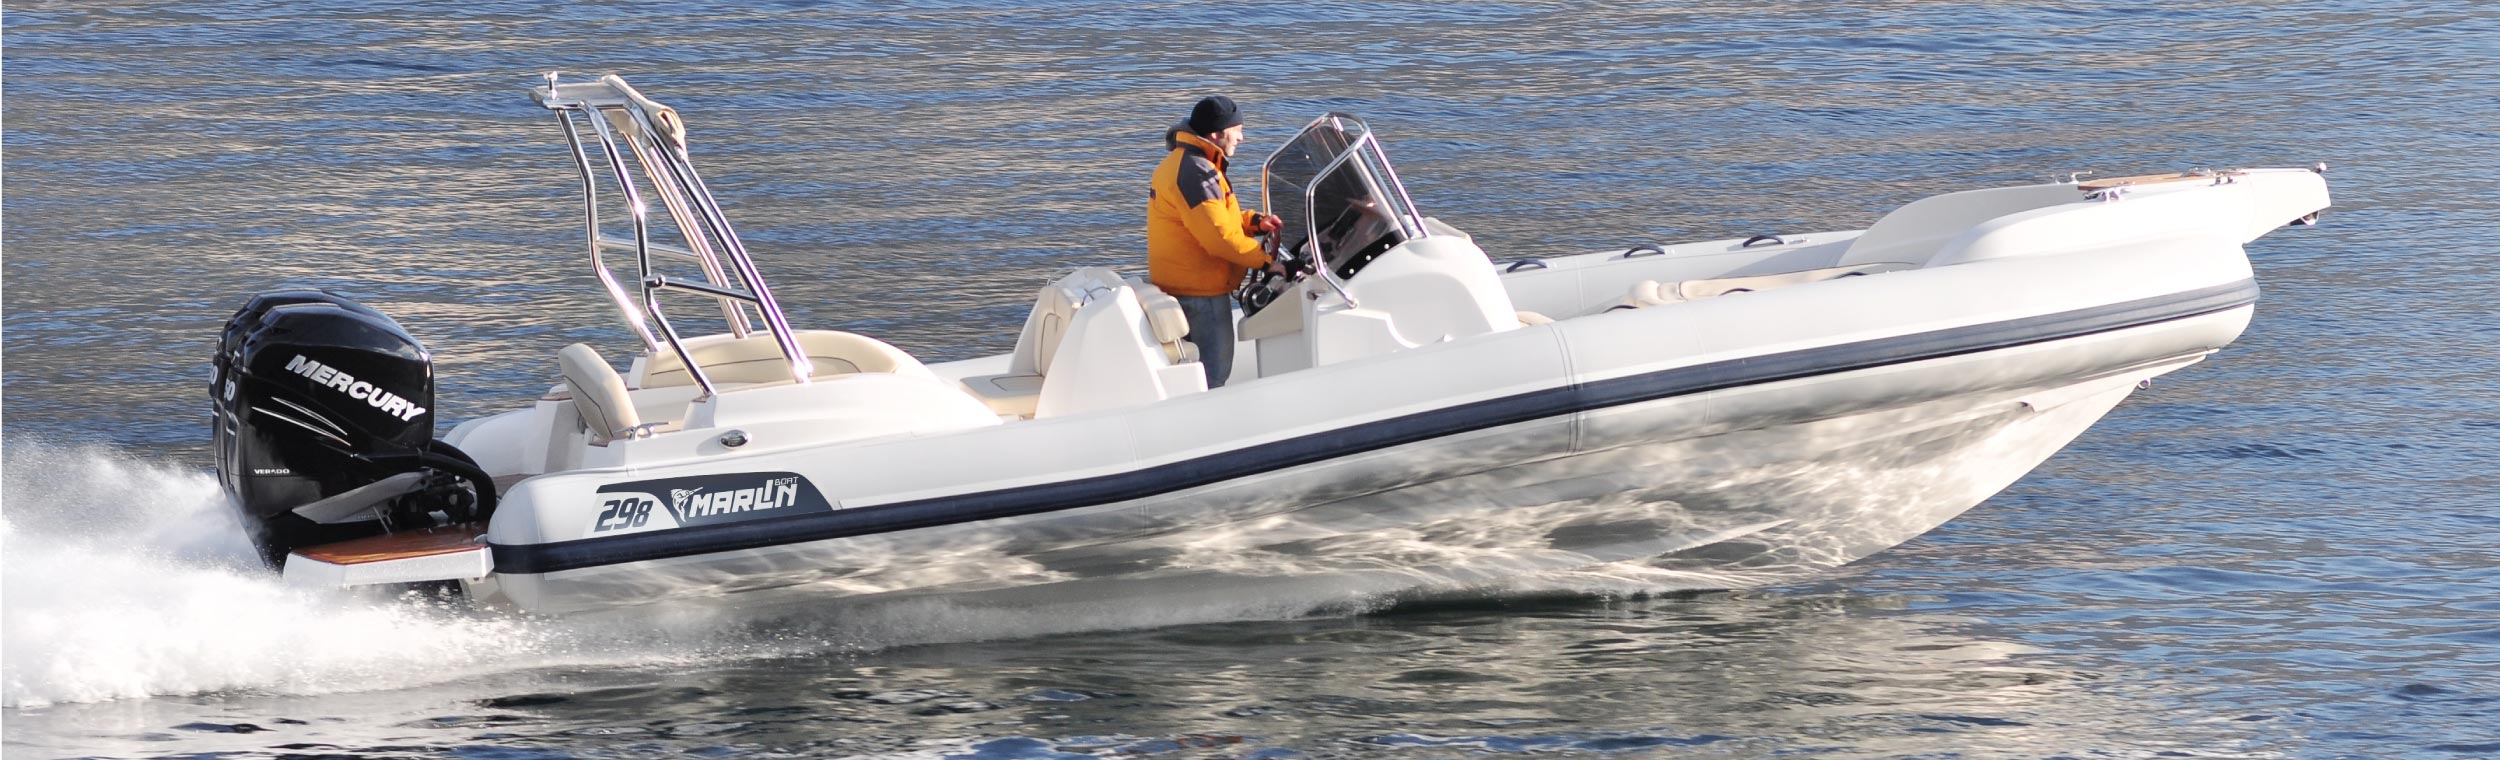 Marlin Boat - Outboard model  298